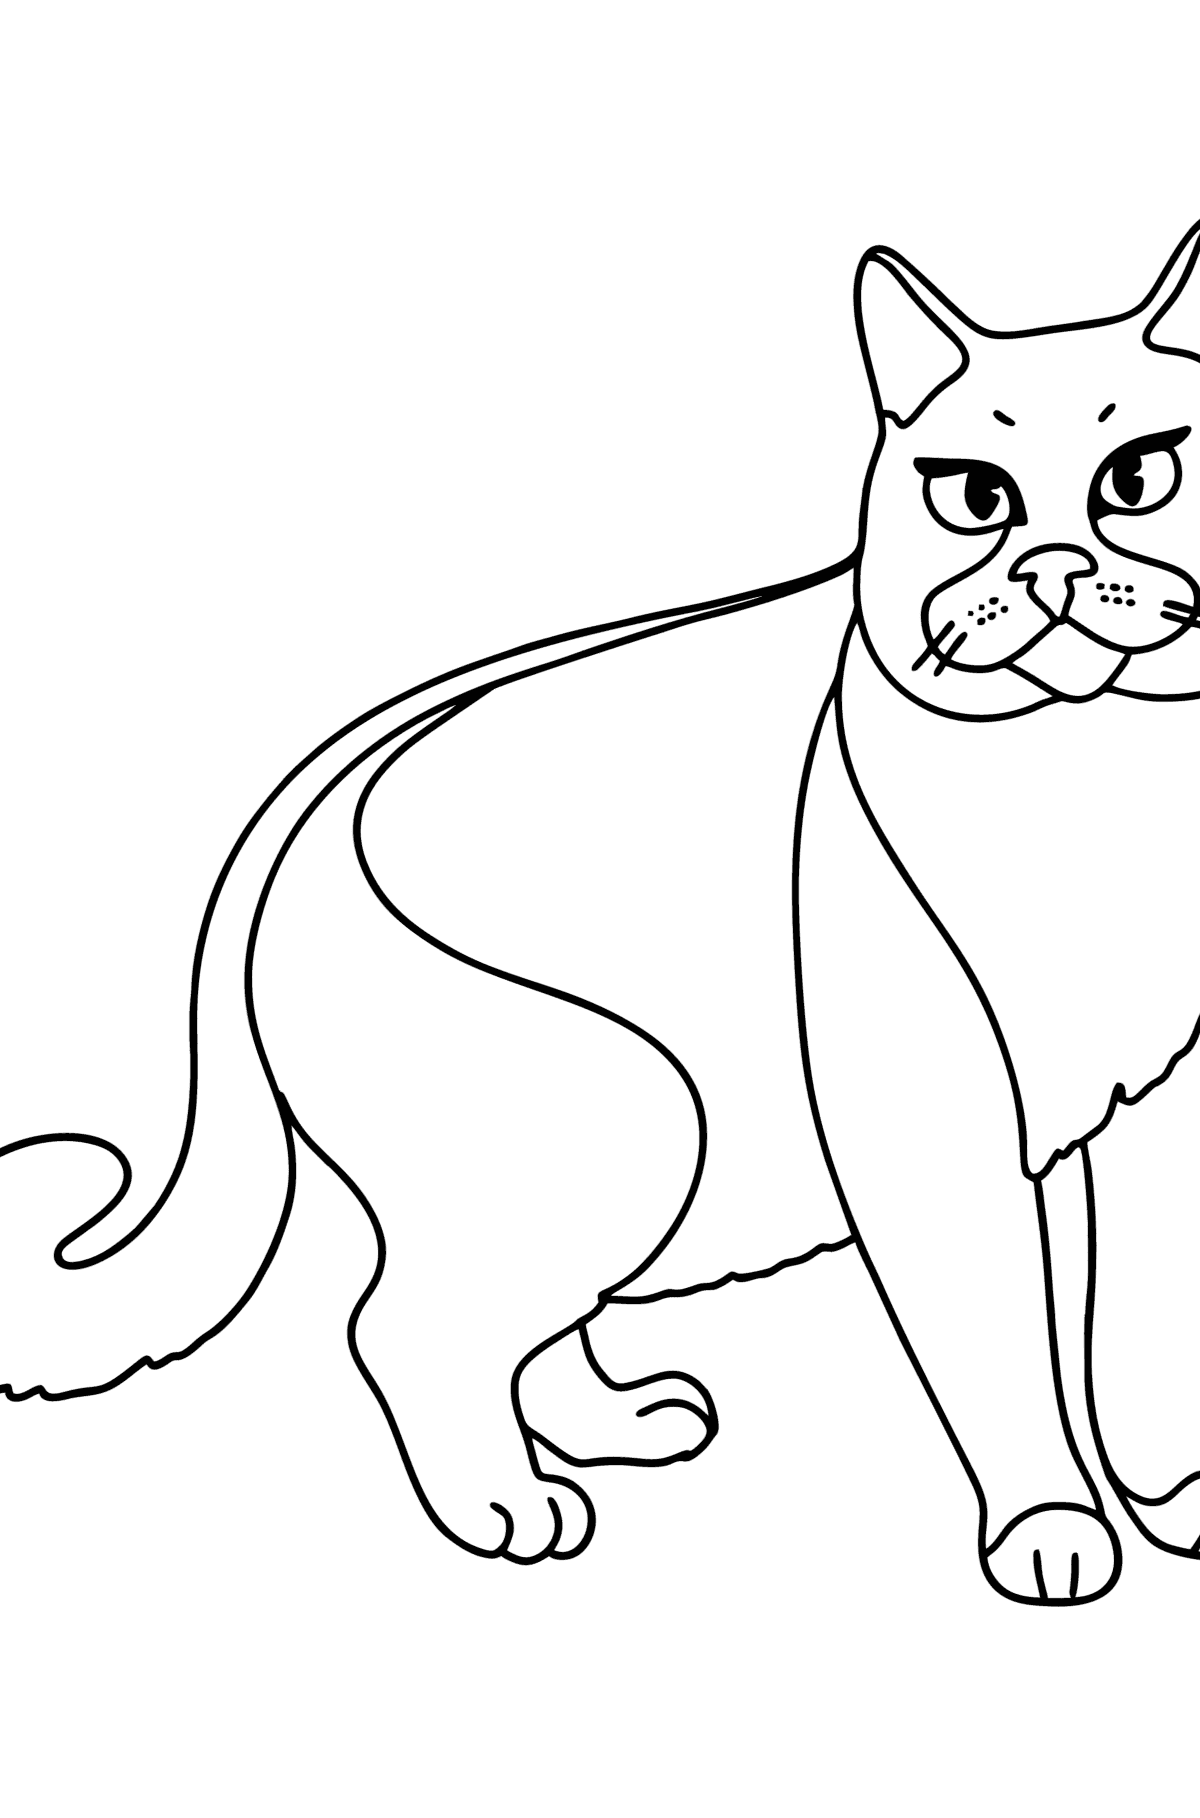 Dibujo de Gato Chartreuse para colorear - Dibujos para Colorear para Niños